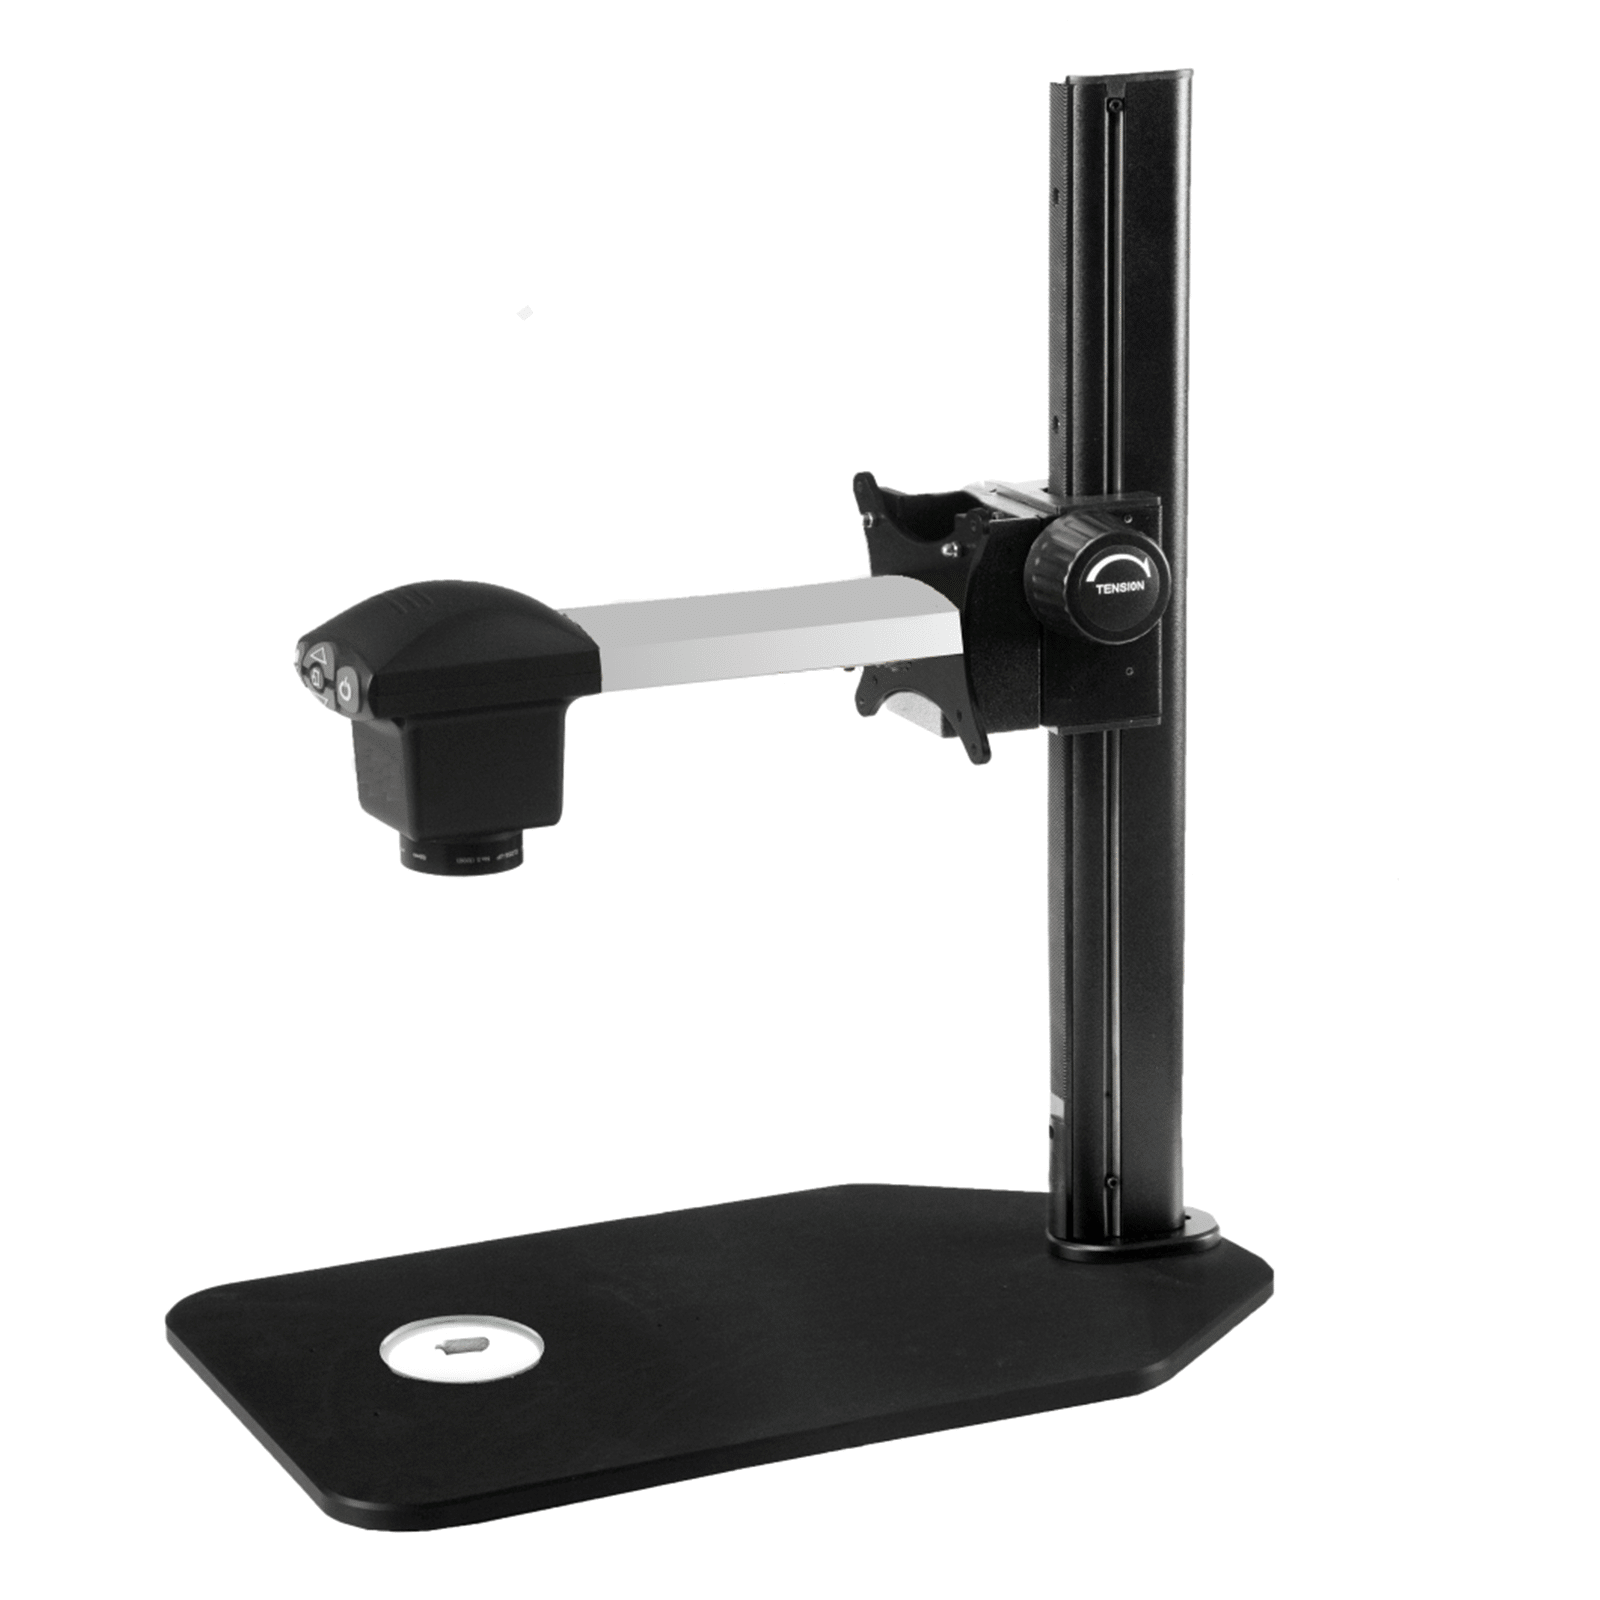 Ash Vision Inspex HD Digital Mikroskop